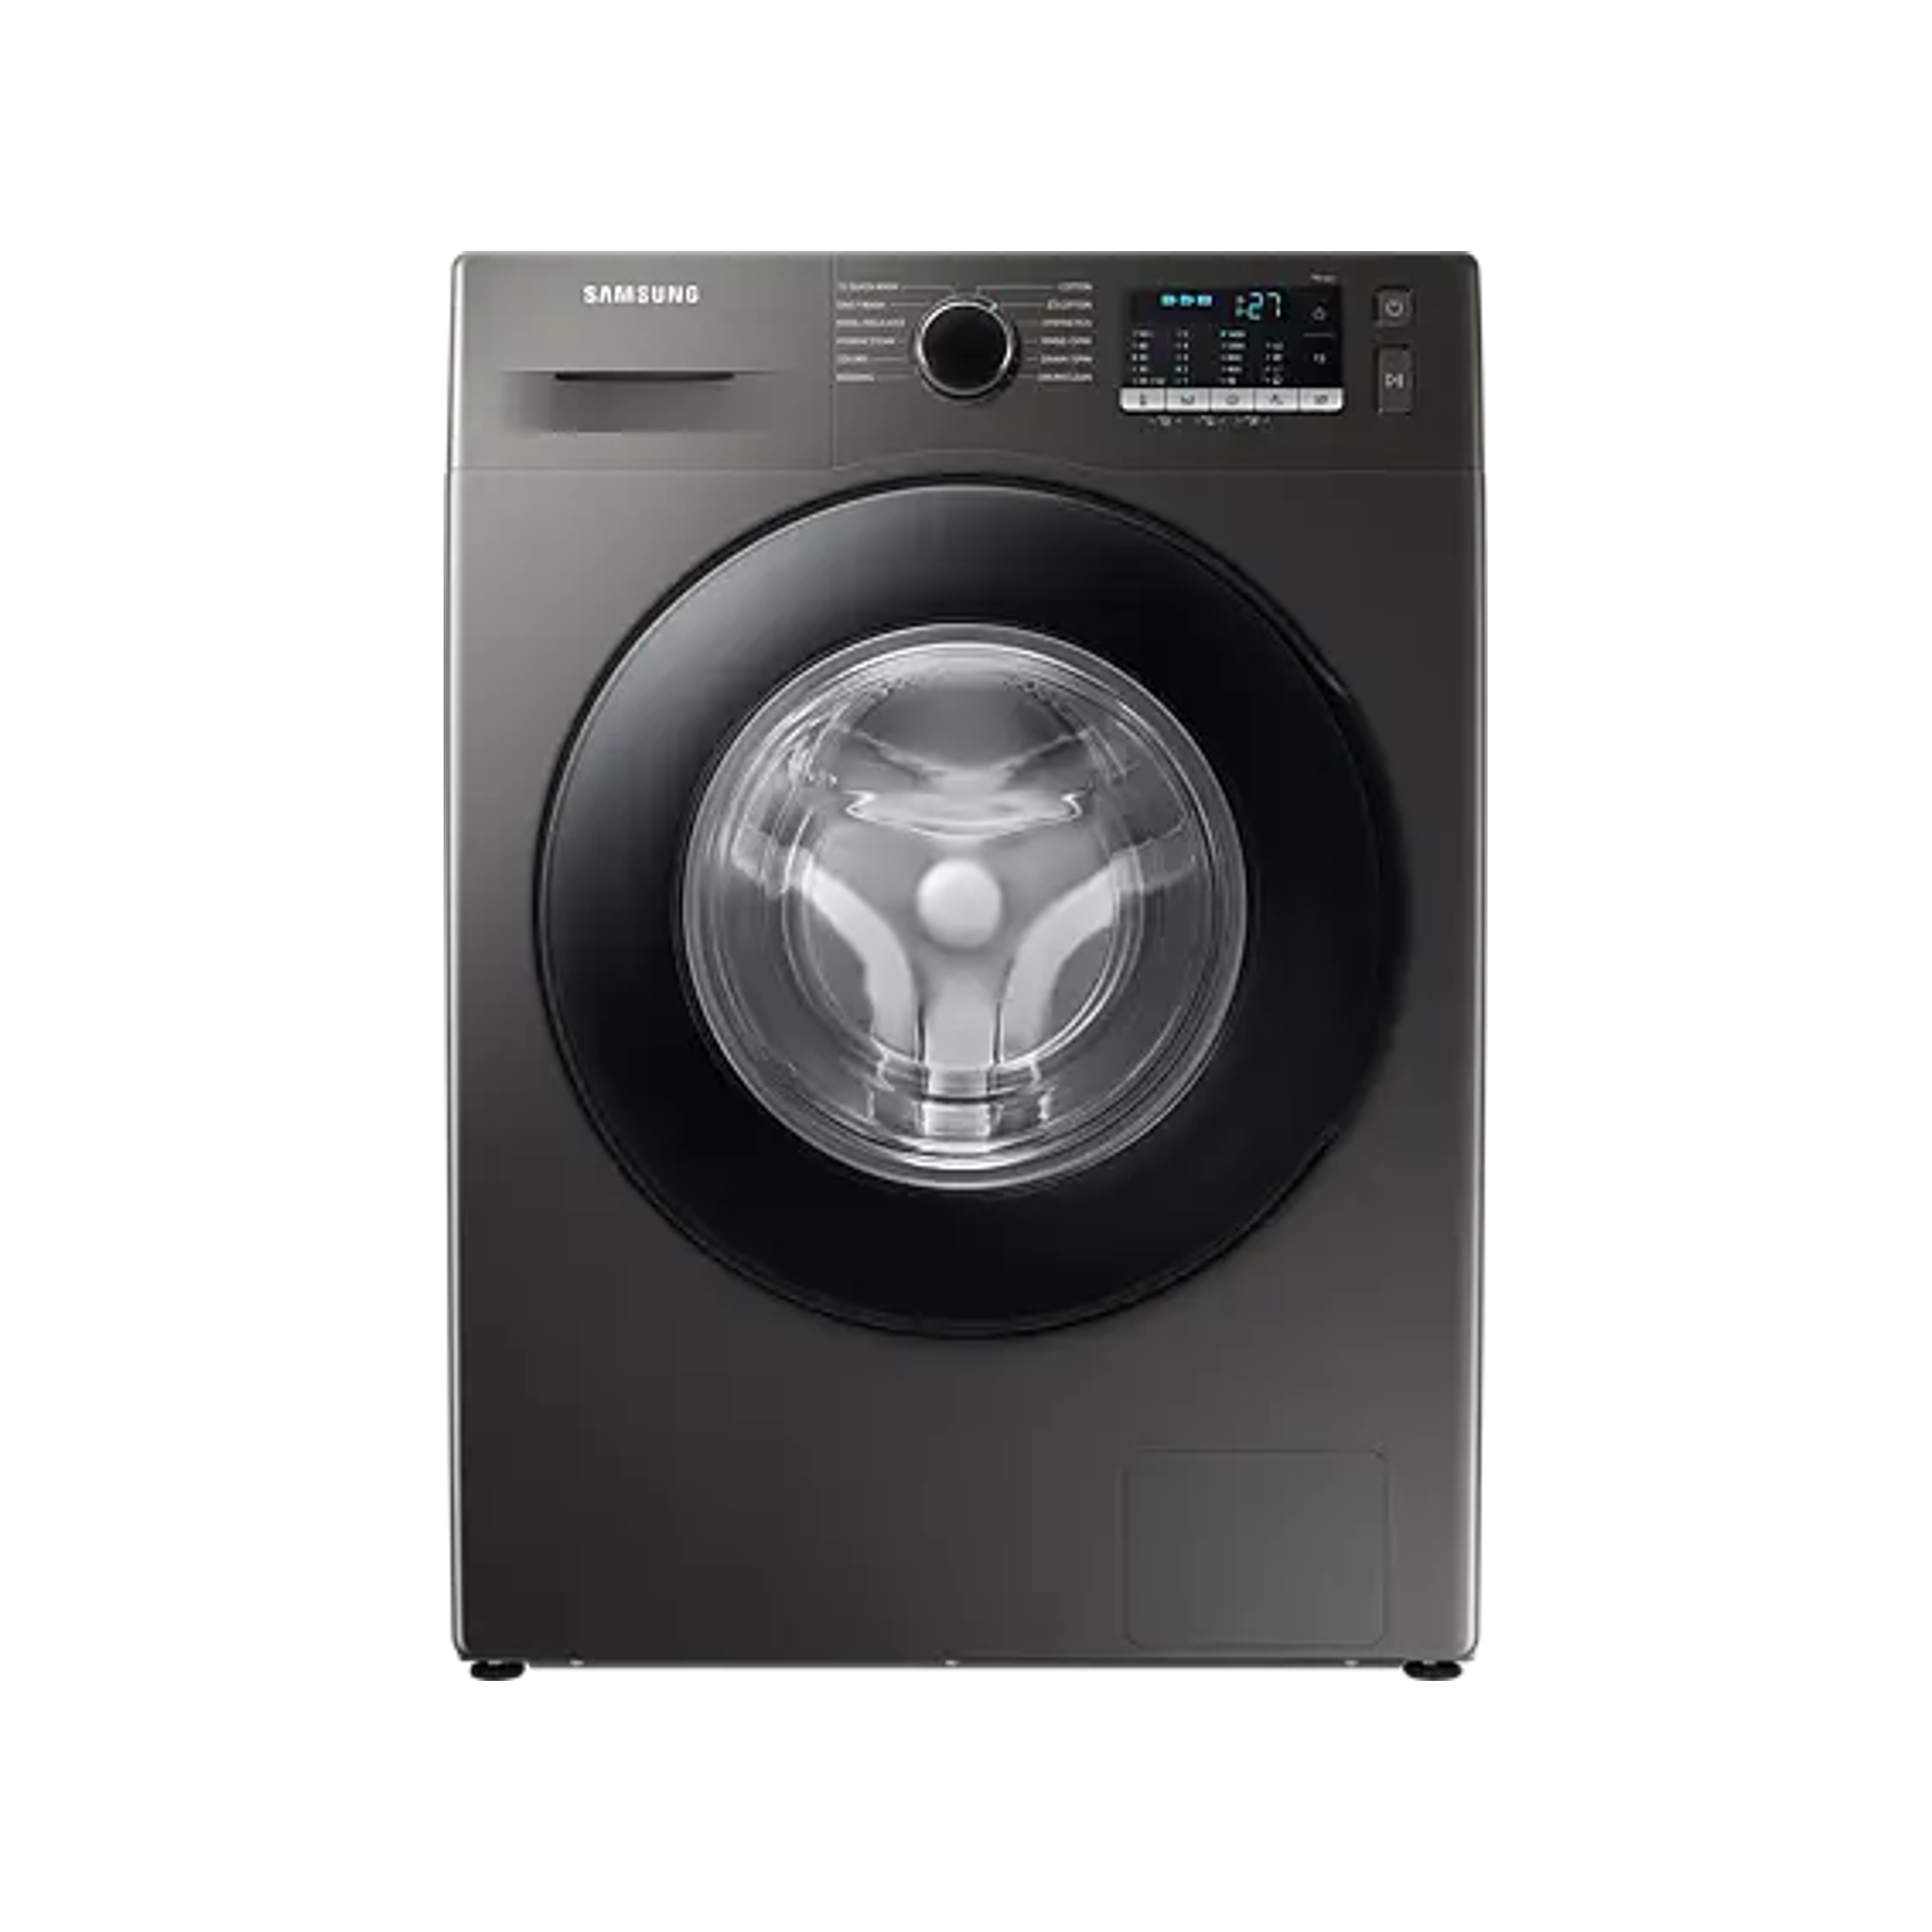 Samsung 8kg Front Loader Washing Machine - Inox Silver